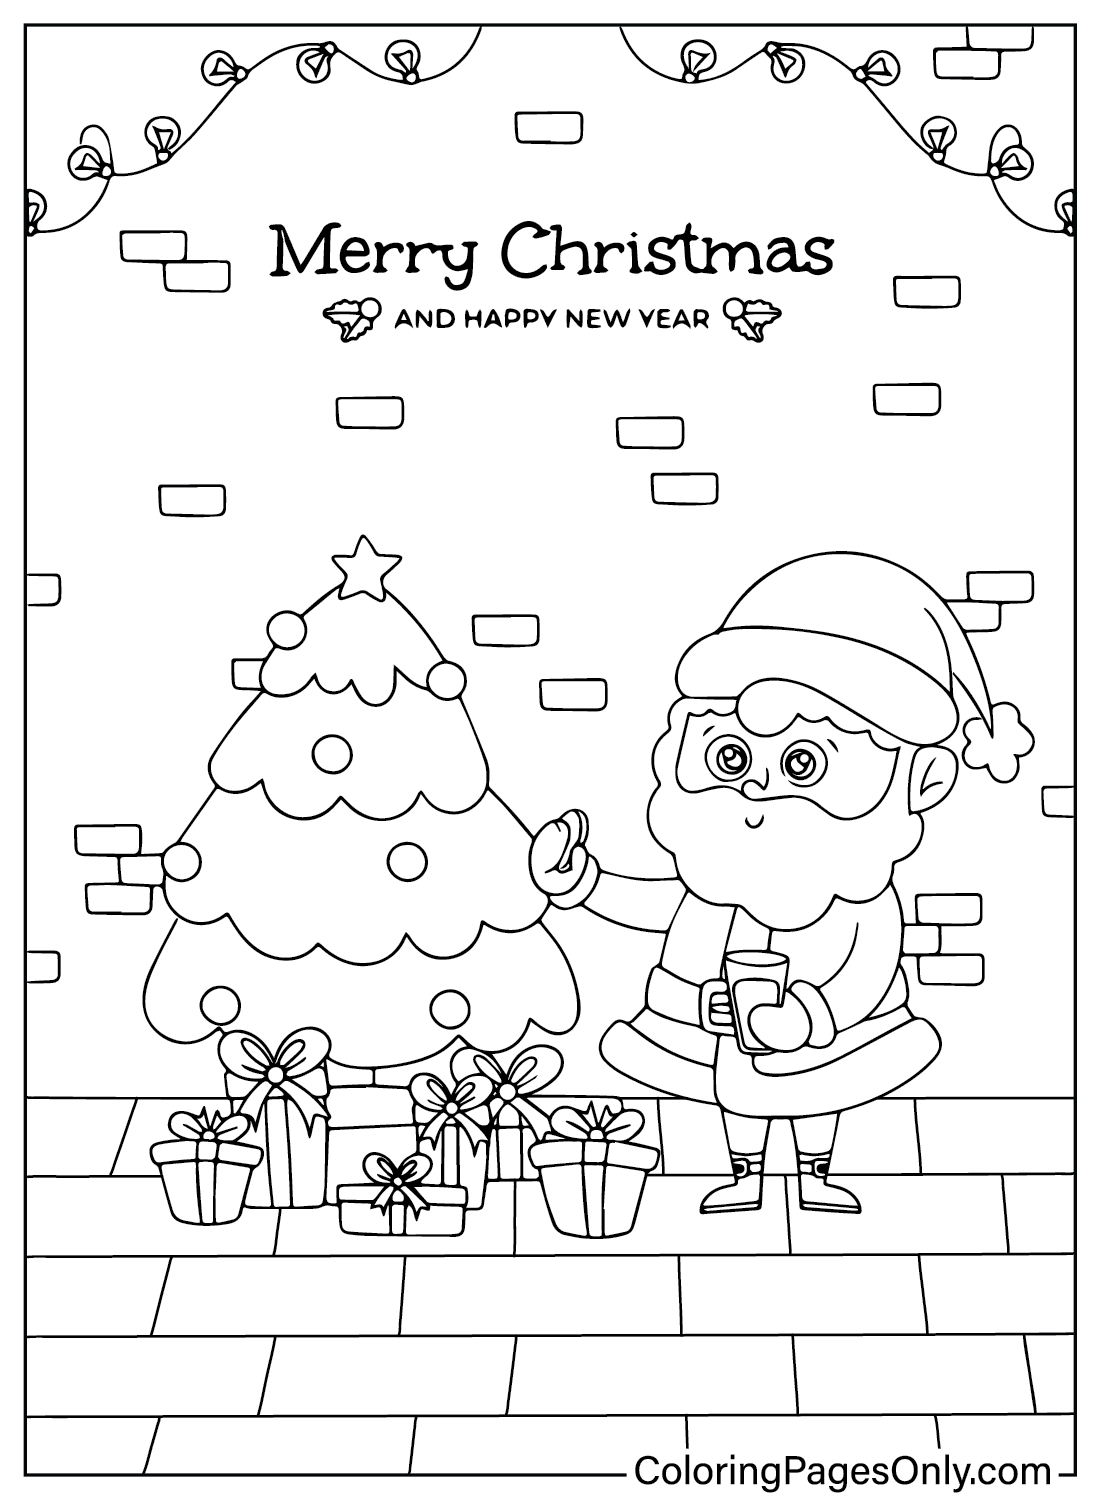 Print Santa Claus Coloring Page